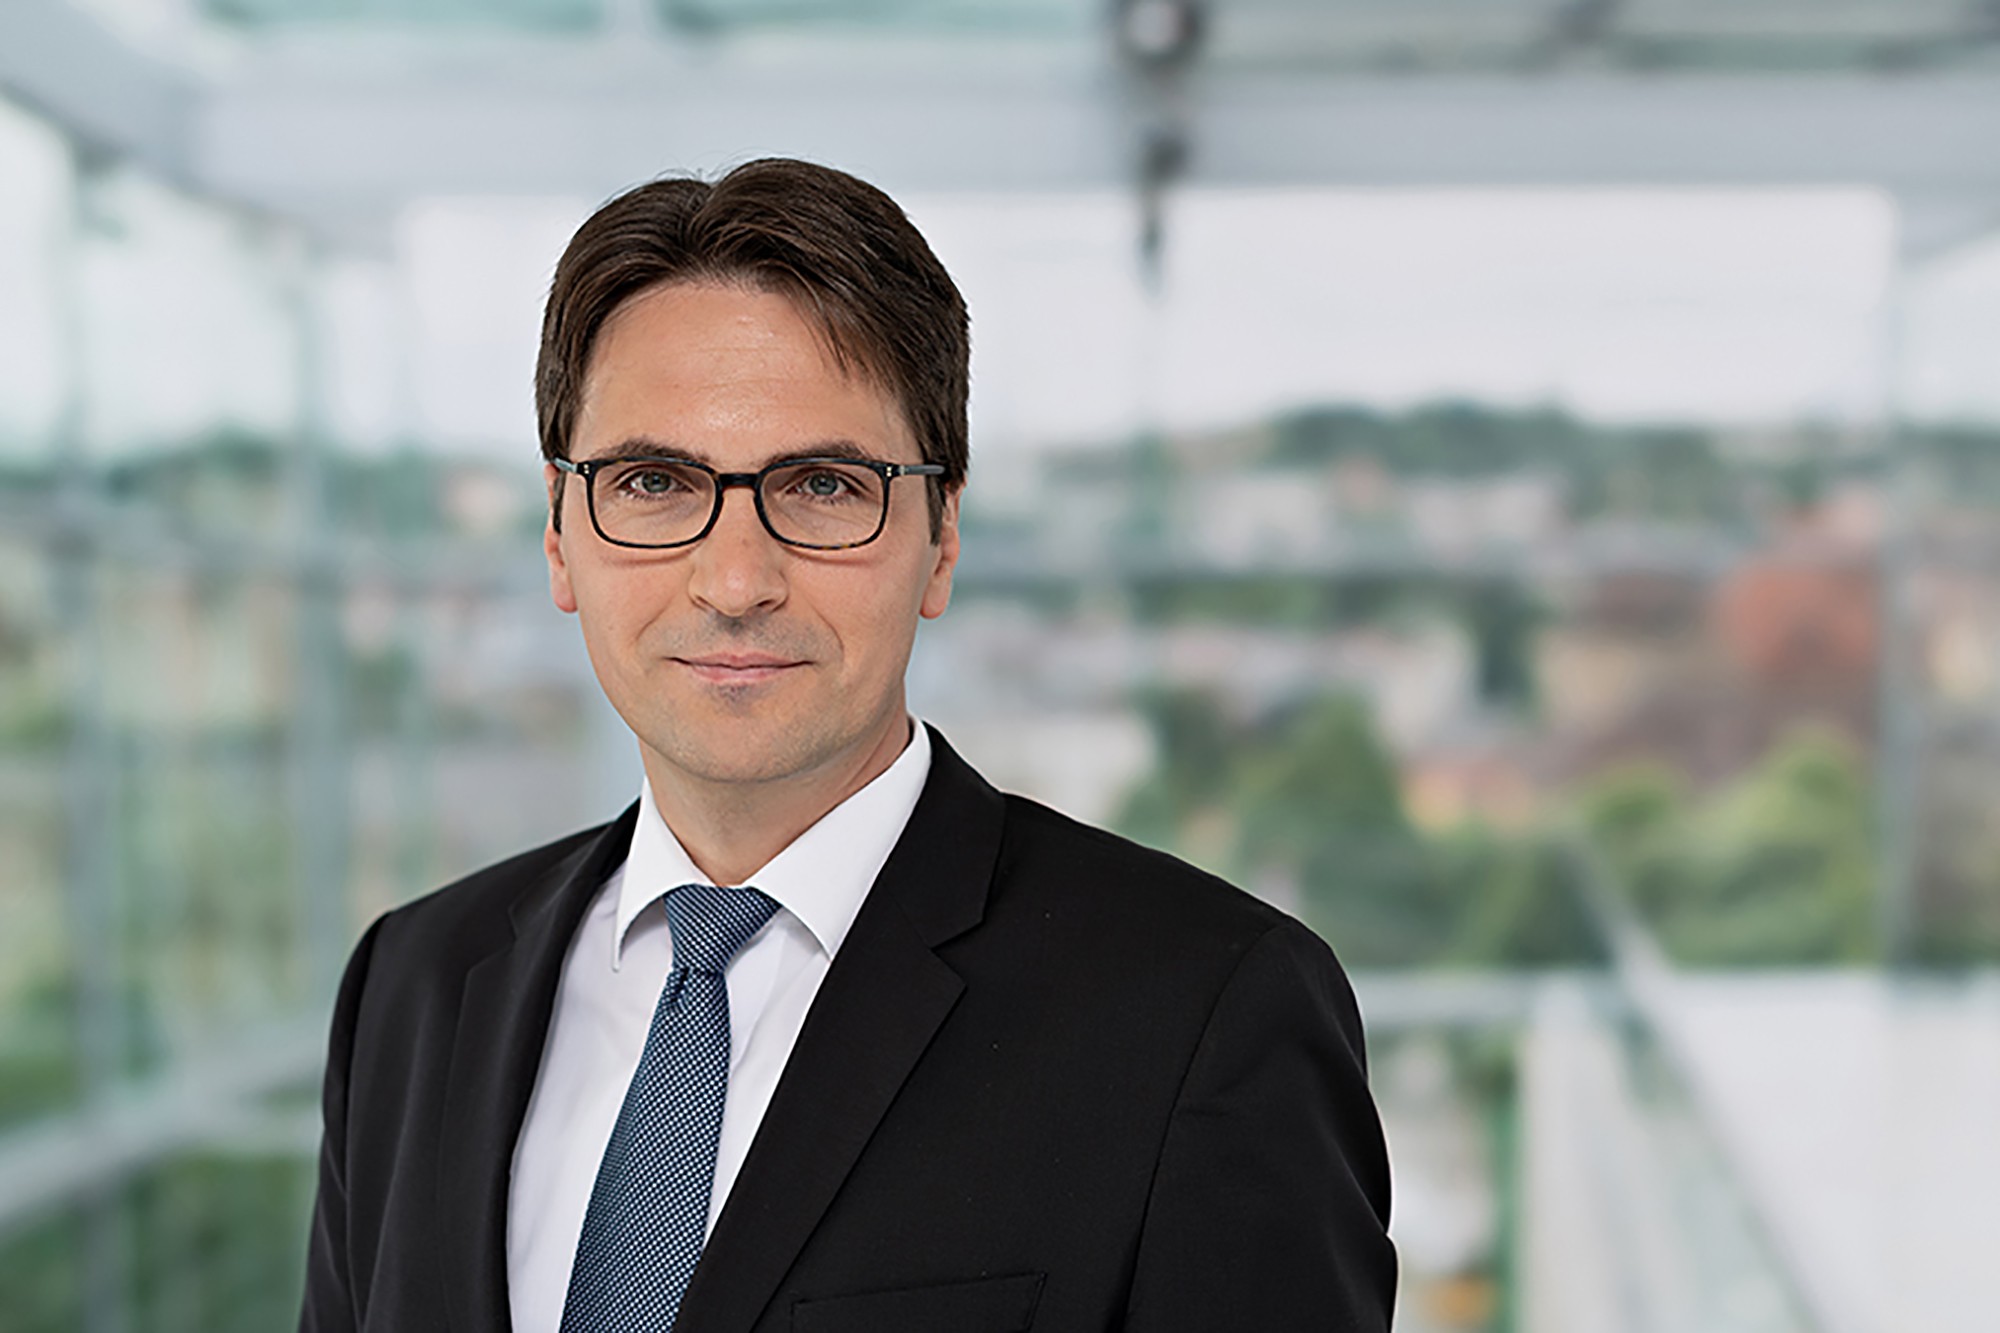 Manfred Hammer, Rechtsanwalt und Spezialist für Wettbewerbsrecht von der Kanzlei Menold Bezler